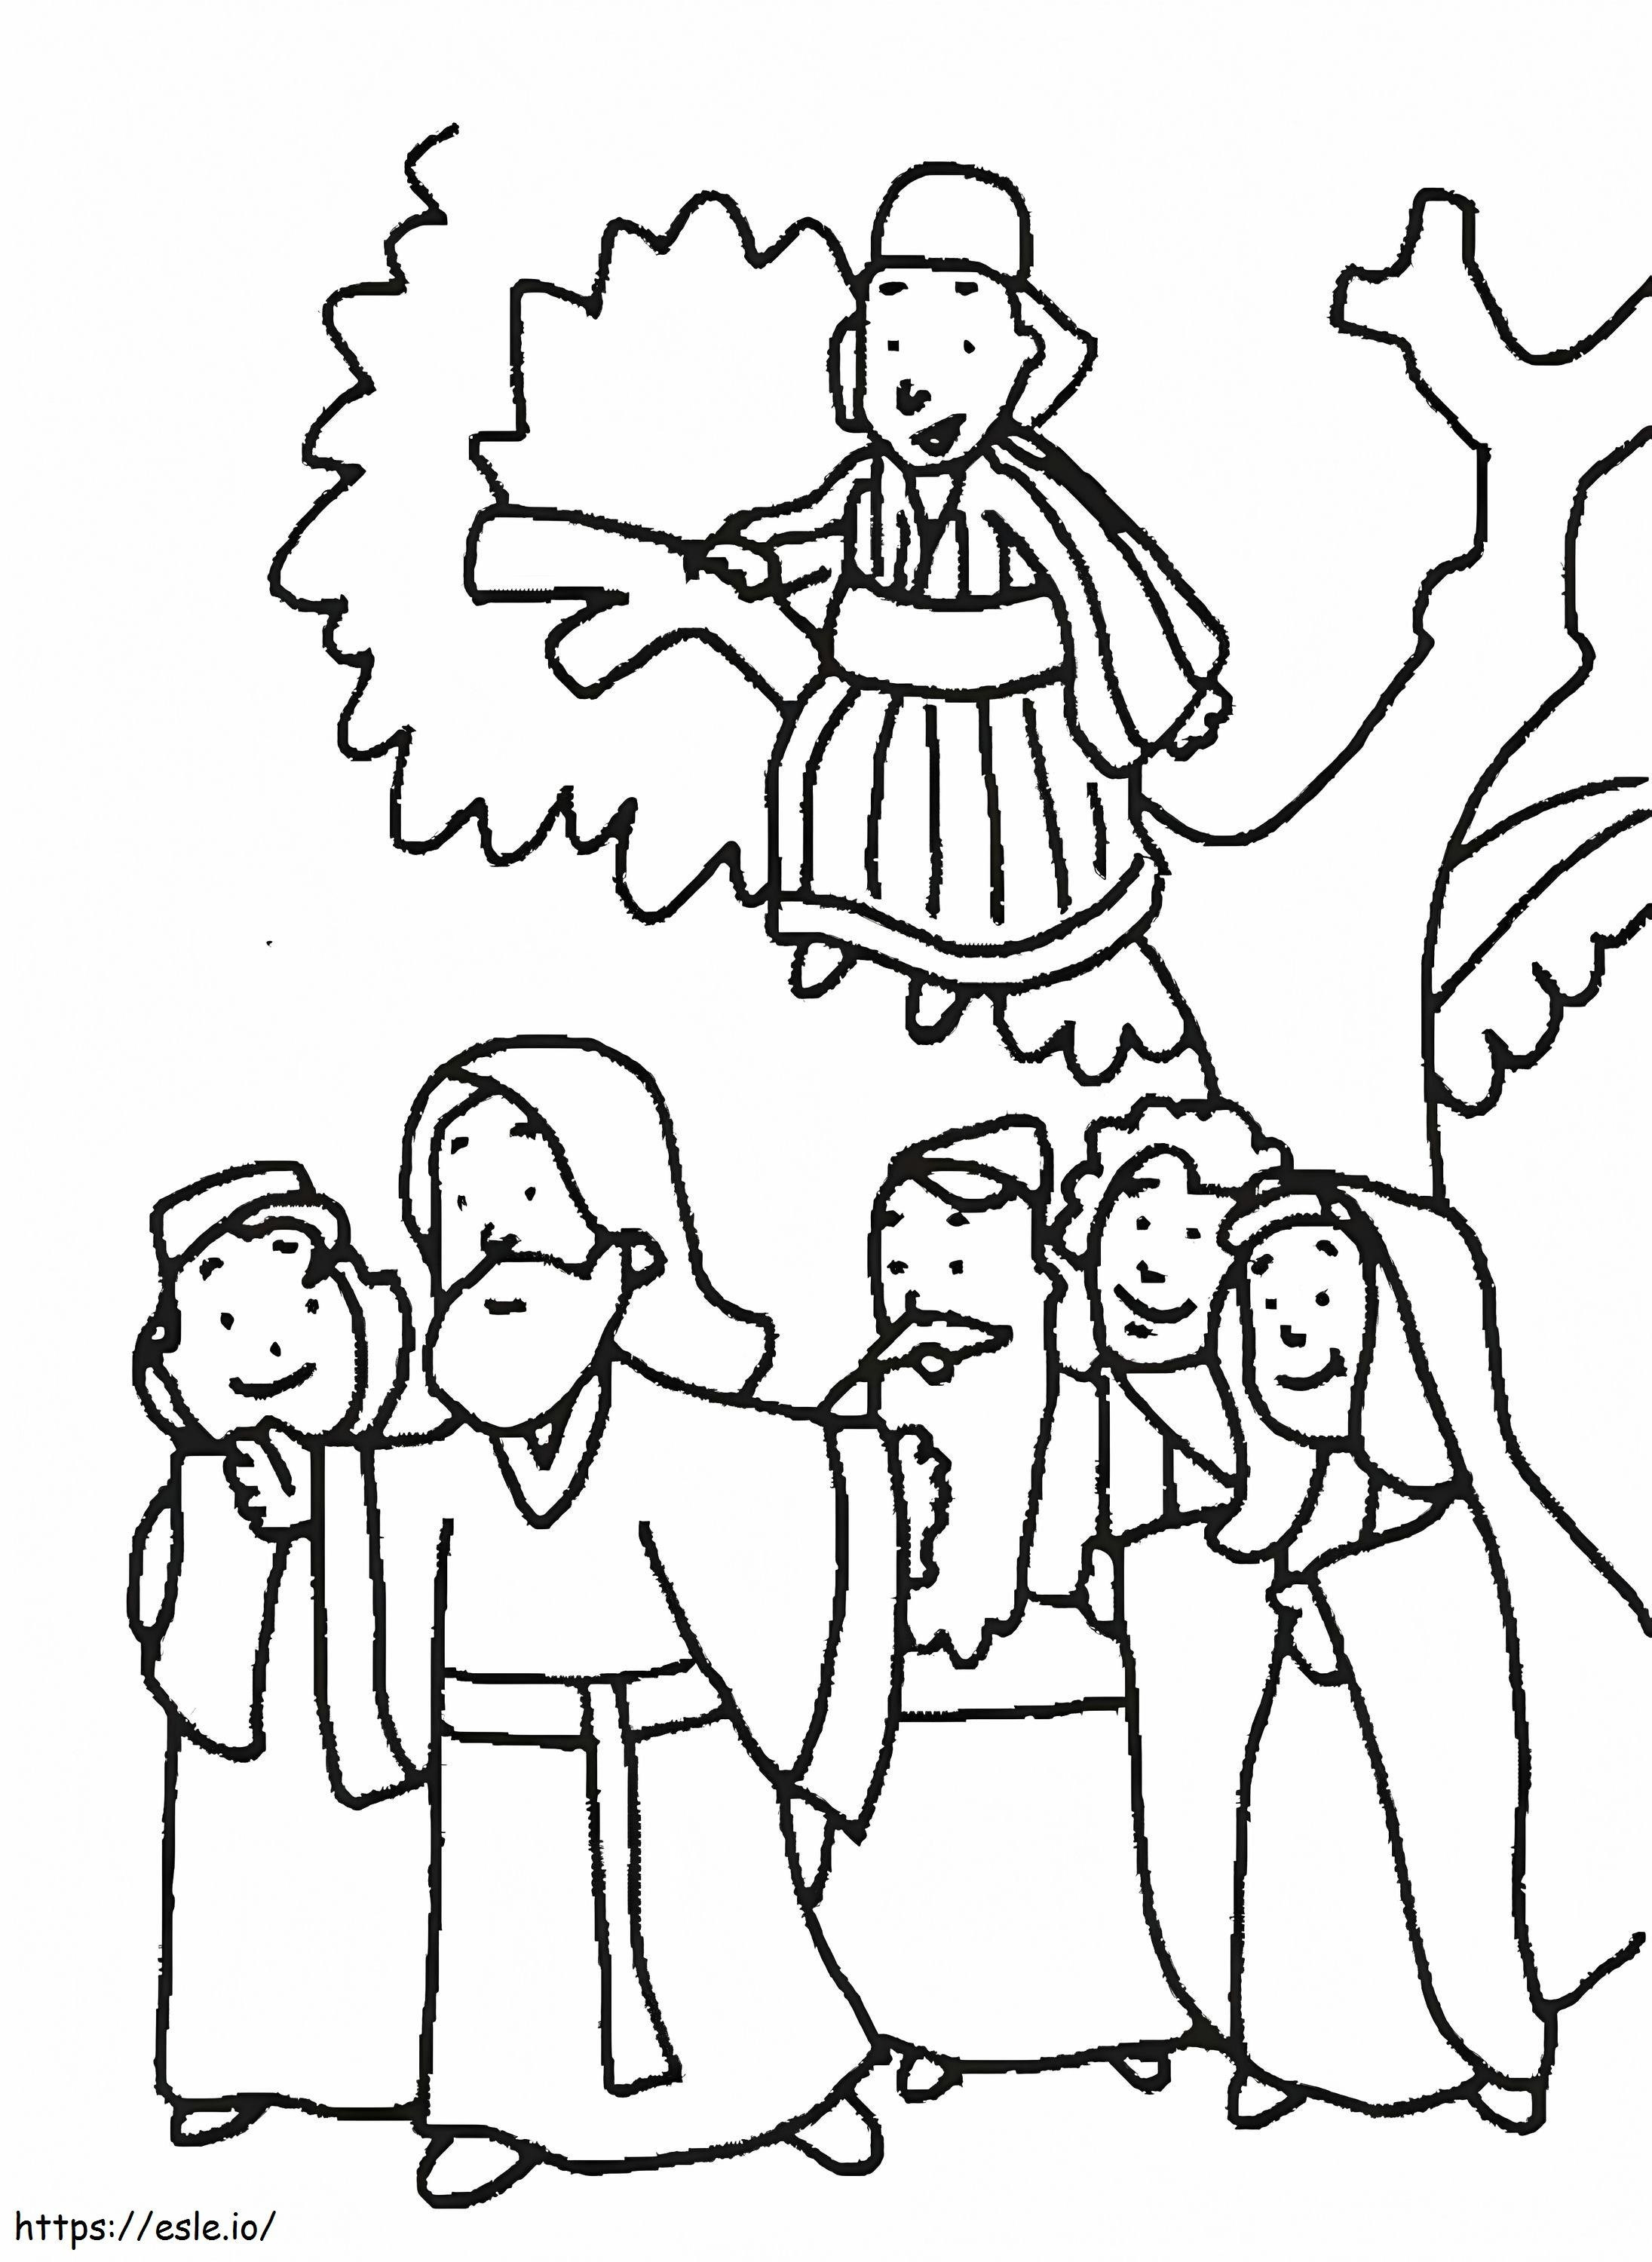 Zacchaeus 8 coloring page